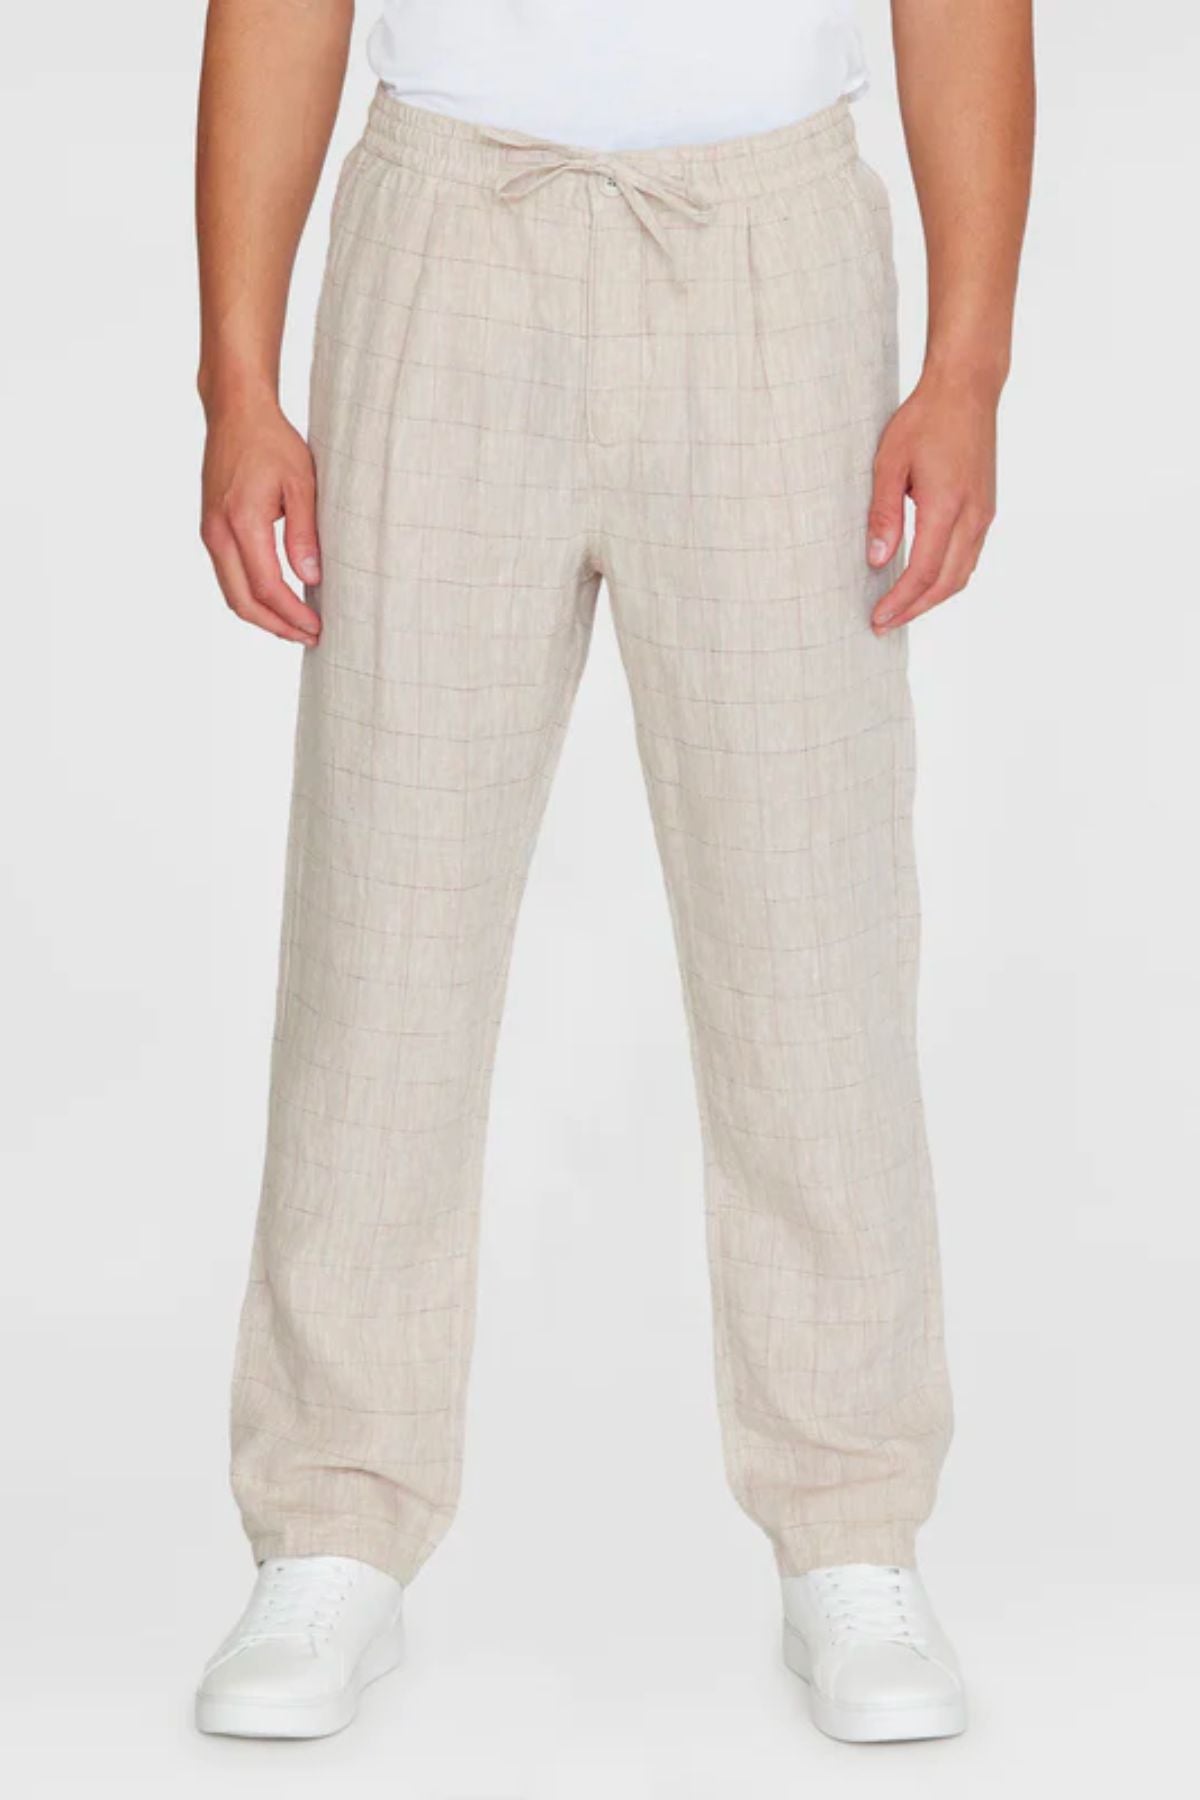 Pantalon Fig loose linen pants - Knowledge cotton apparel